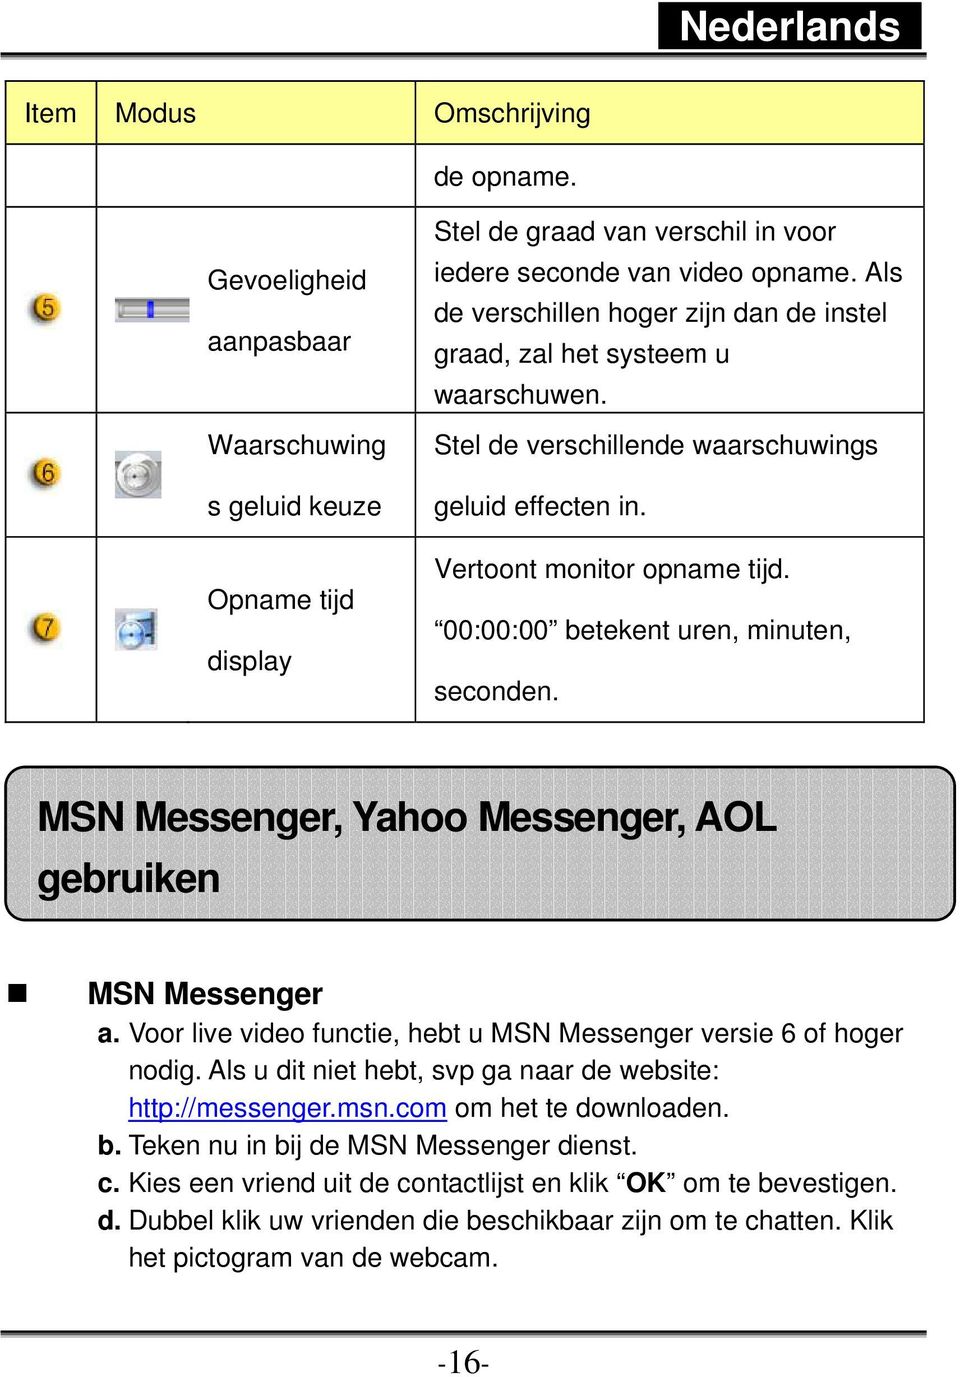 00:00:00 betekent uren, minuten, seconden. MSN Messenger, Yahoo Messenger, AOL gebruiken MSN Messenger a. Voor live video functie, hebt u MSN Messenger versie 6 of hoger nodig.